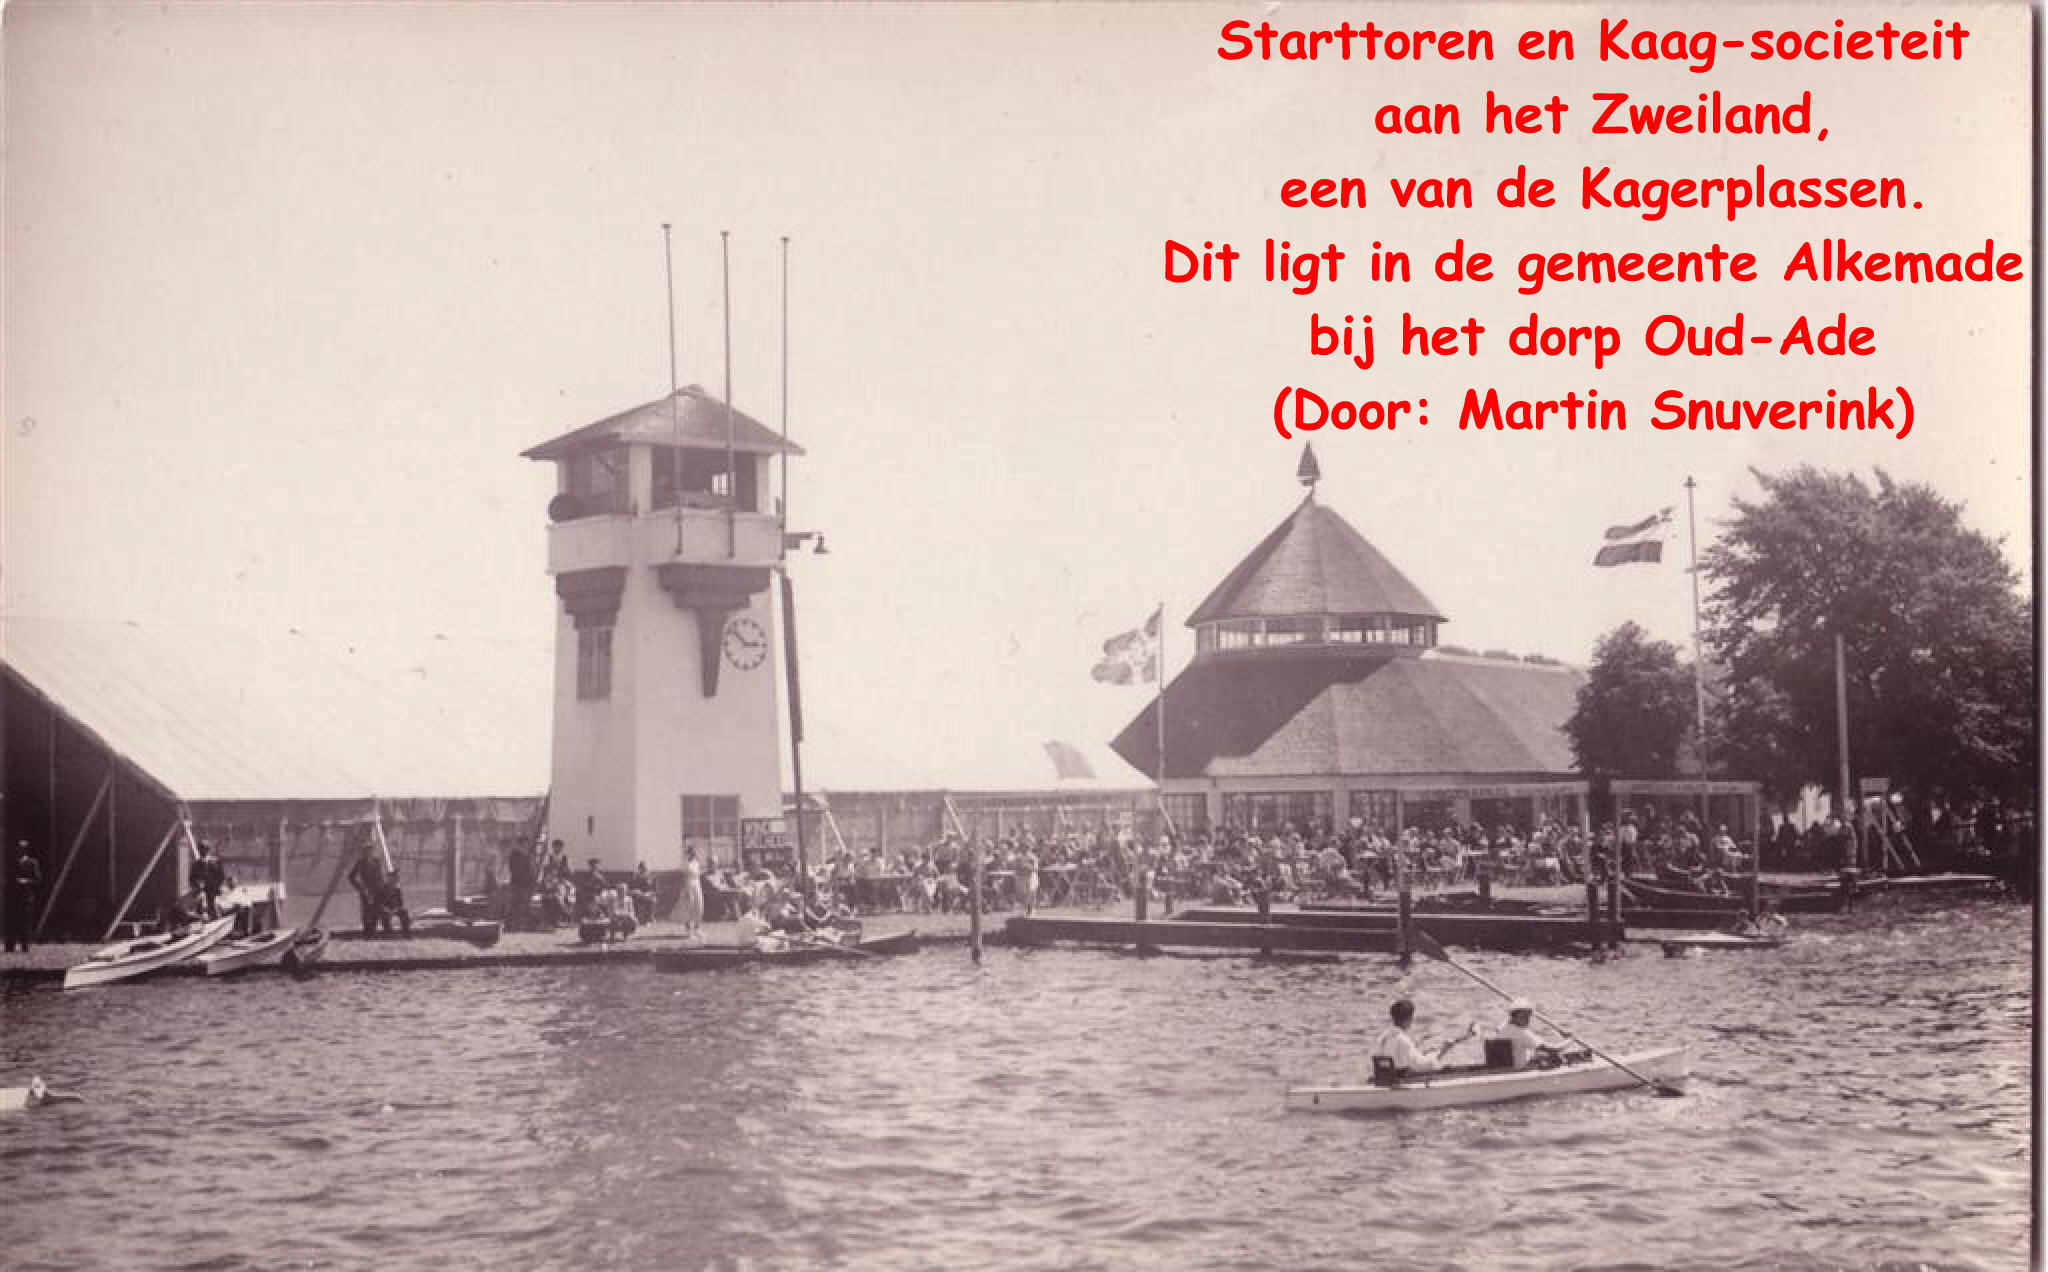 Starttoren en Kaag-societeit aan het Zweiland, een van de Kagerplassen. Dit ligt in de gemeente Alkemade bij het dorp Oud-Ade (Door: Martin Snuverink)